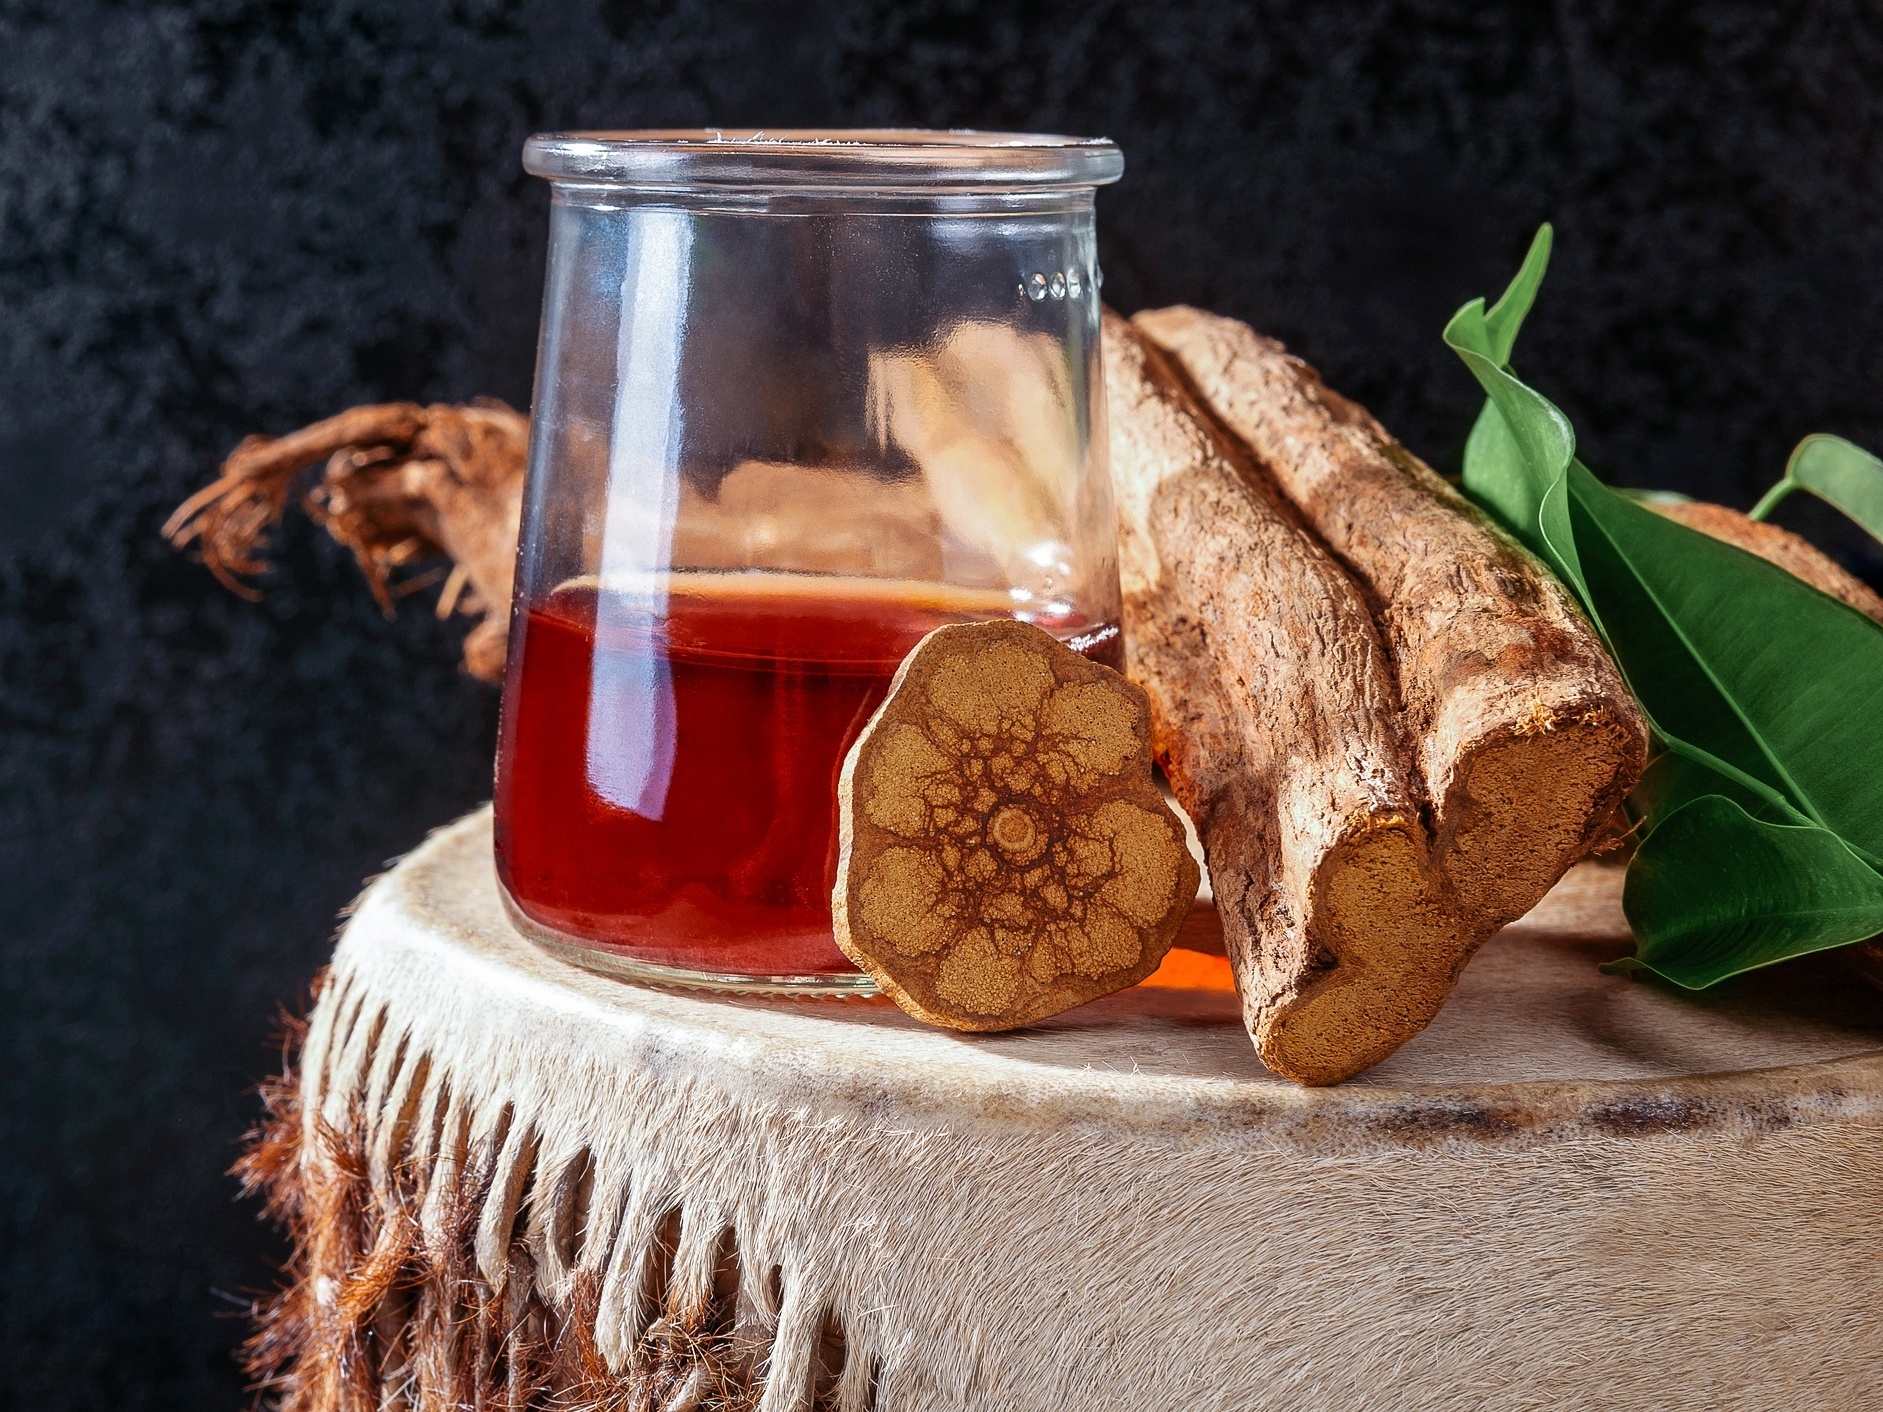  Čaj Santo Daime: saznajte više o napitku i njegovim učincima